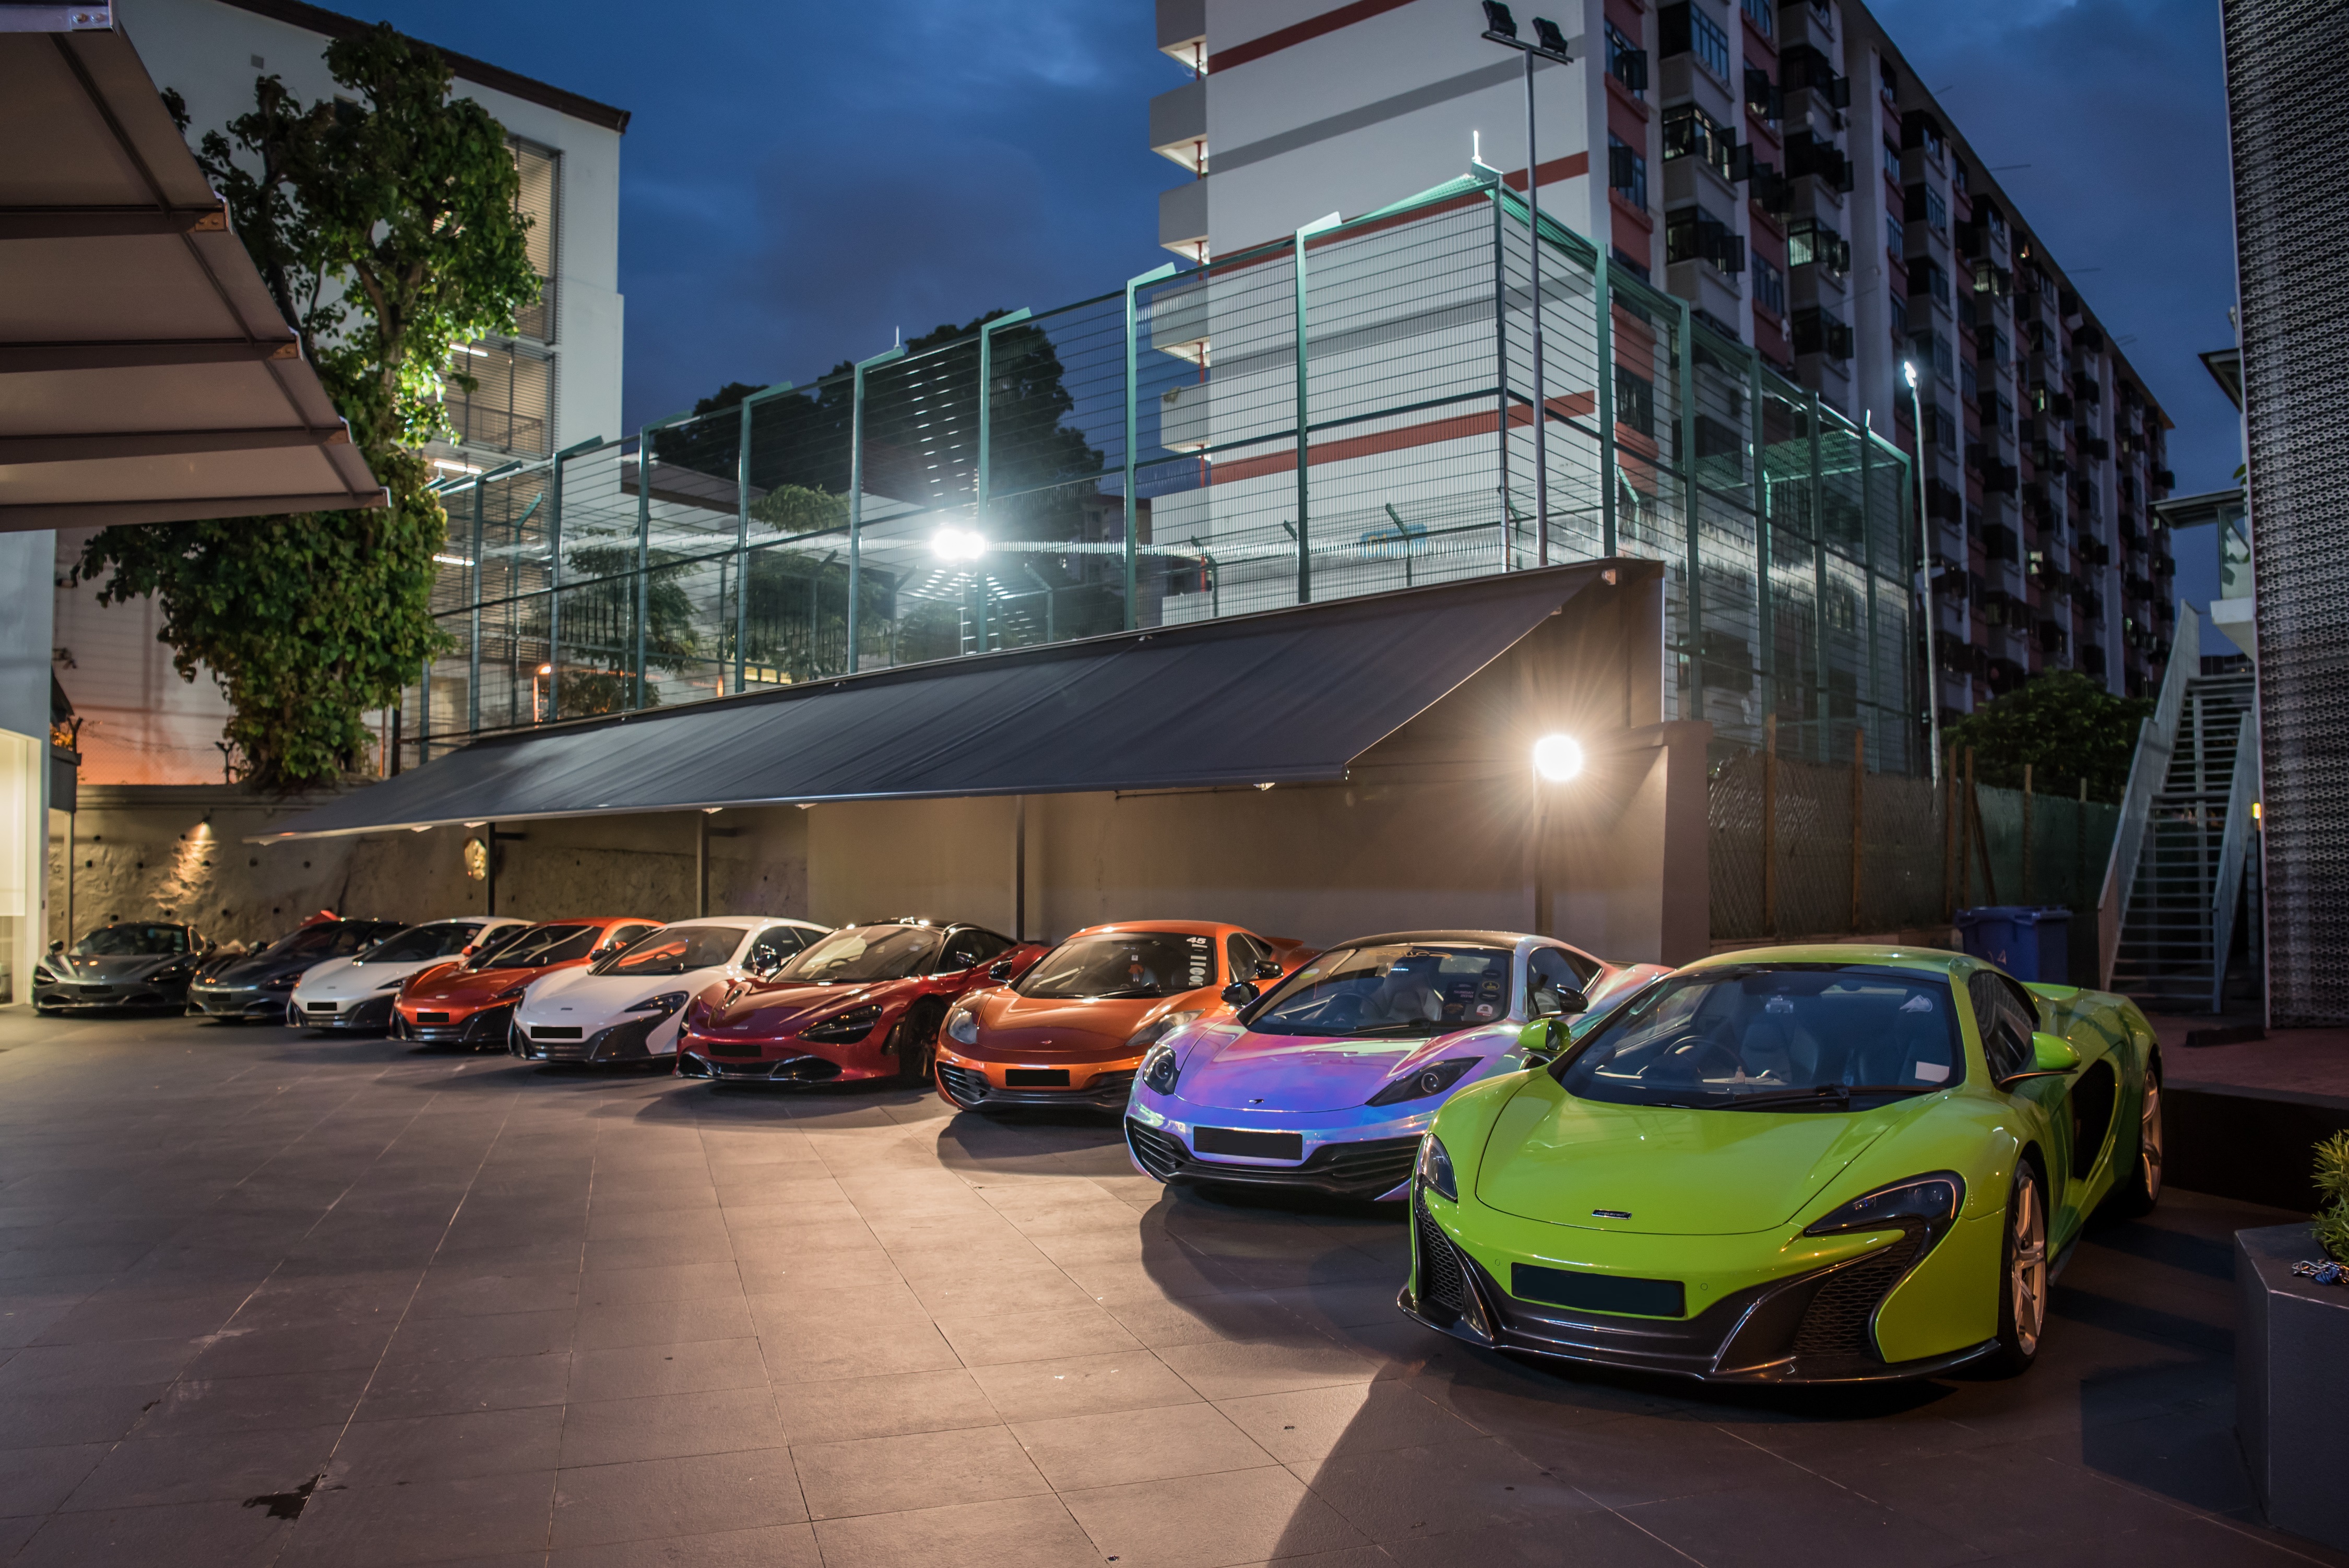 A brilliant showcase of McLaren models outside the McLaren showroom